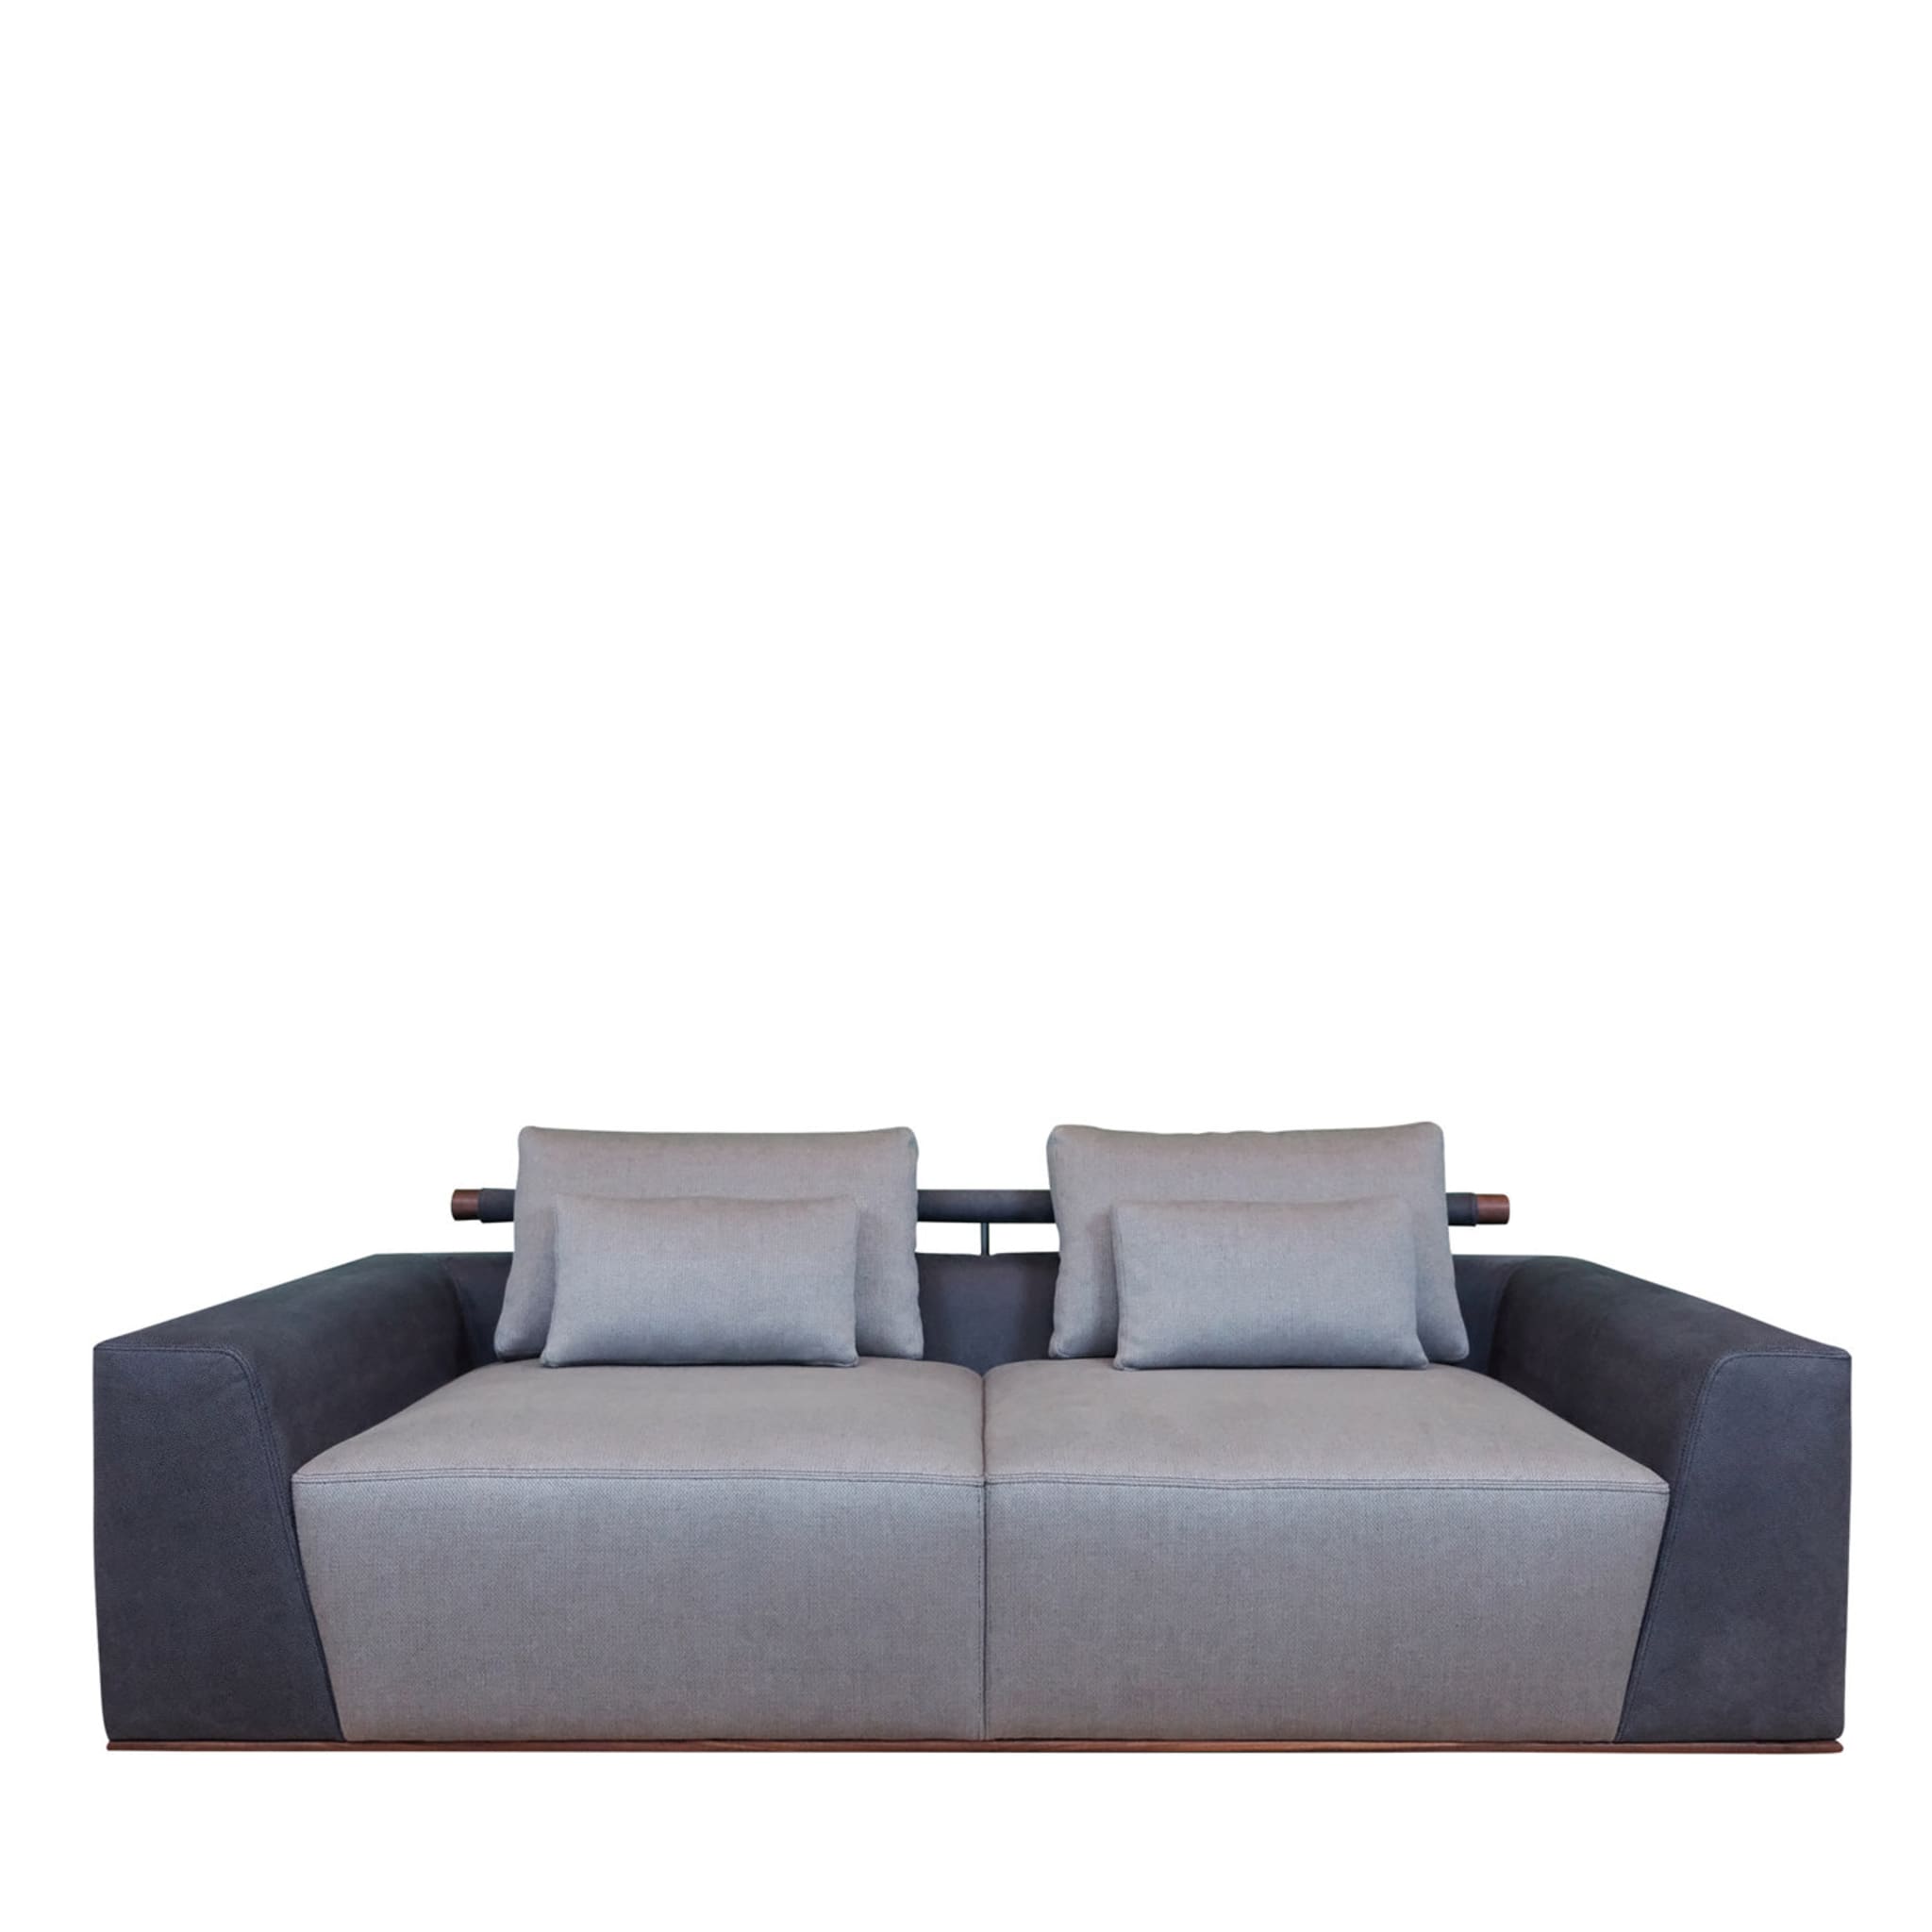 Elyo Blue and Gray Sofa - Main view